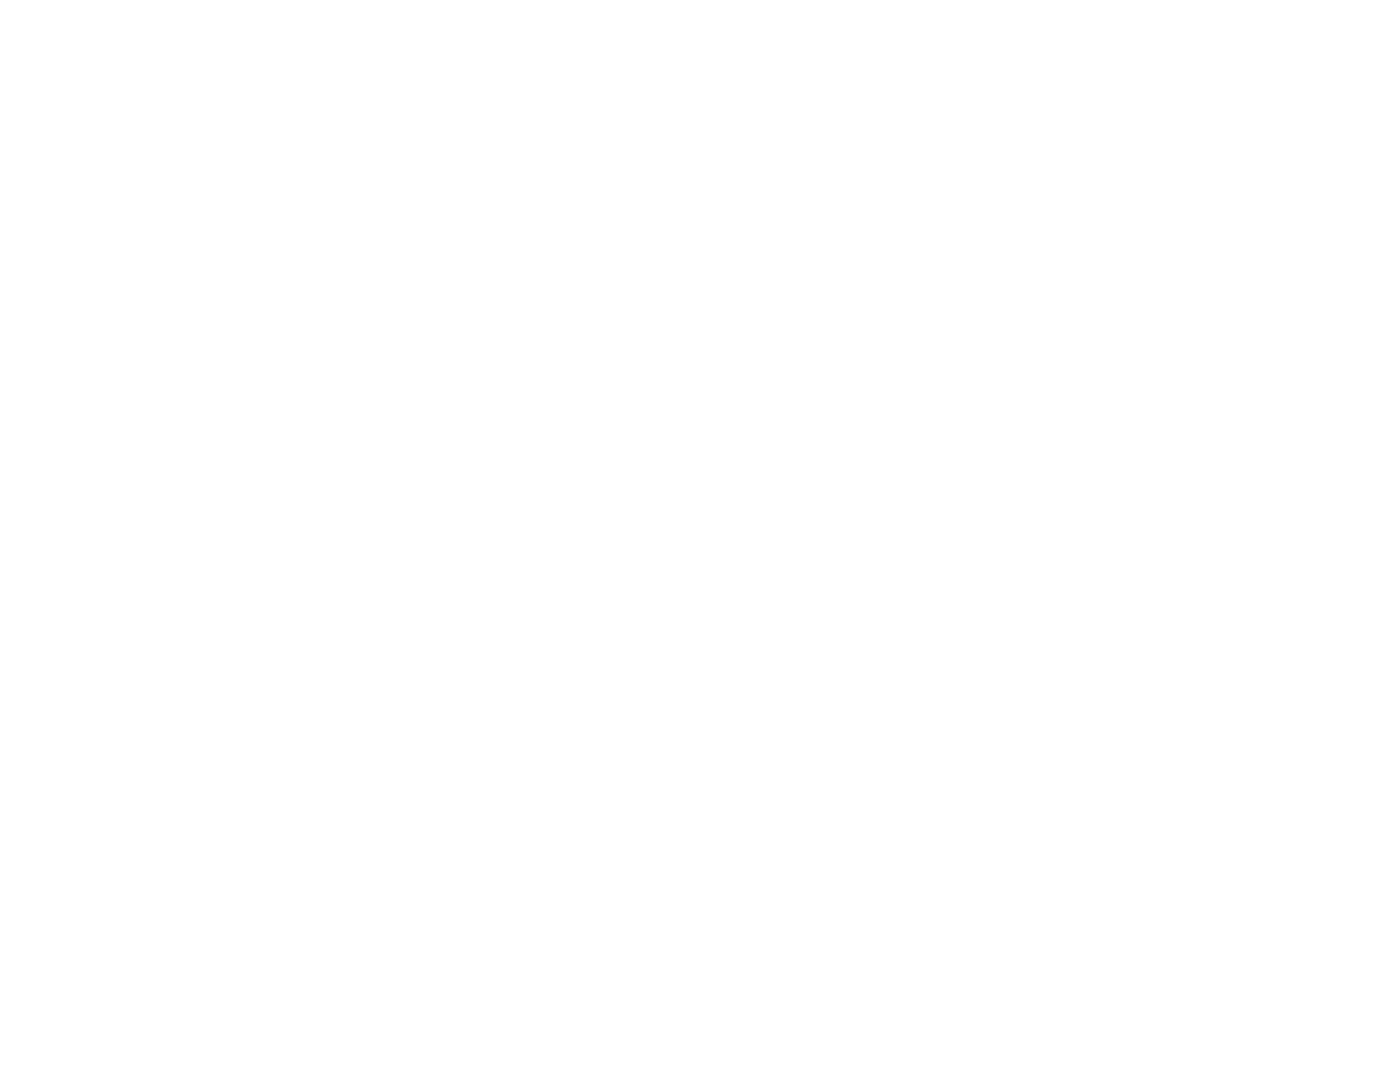 Career Coffee